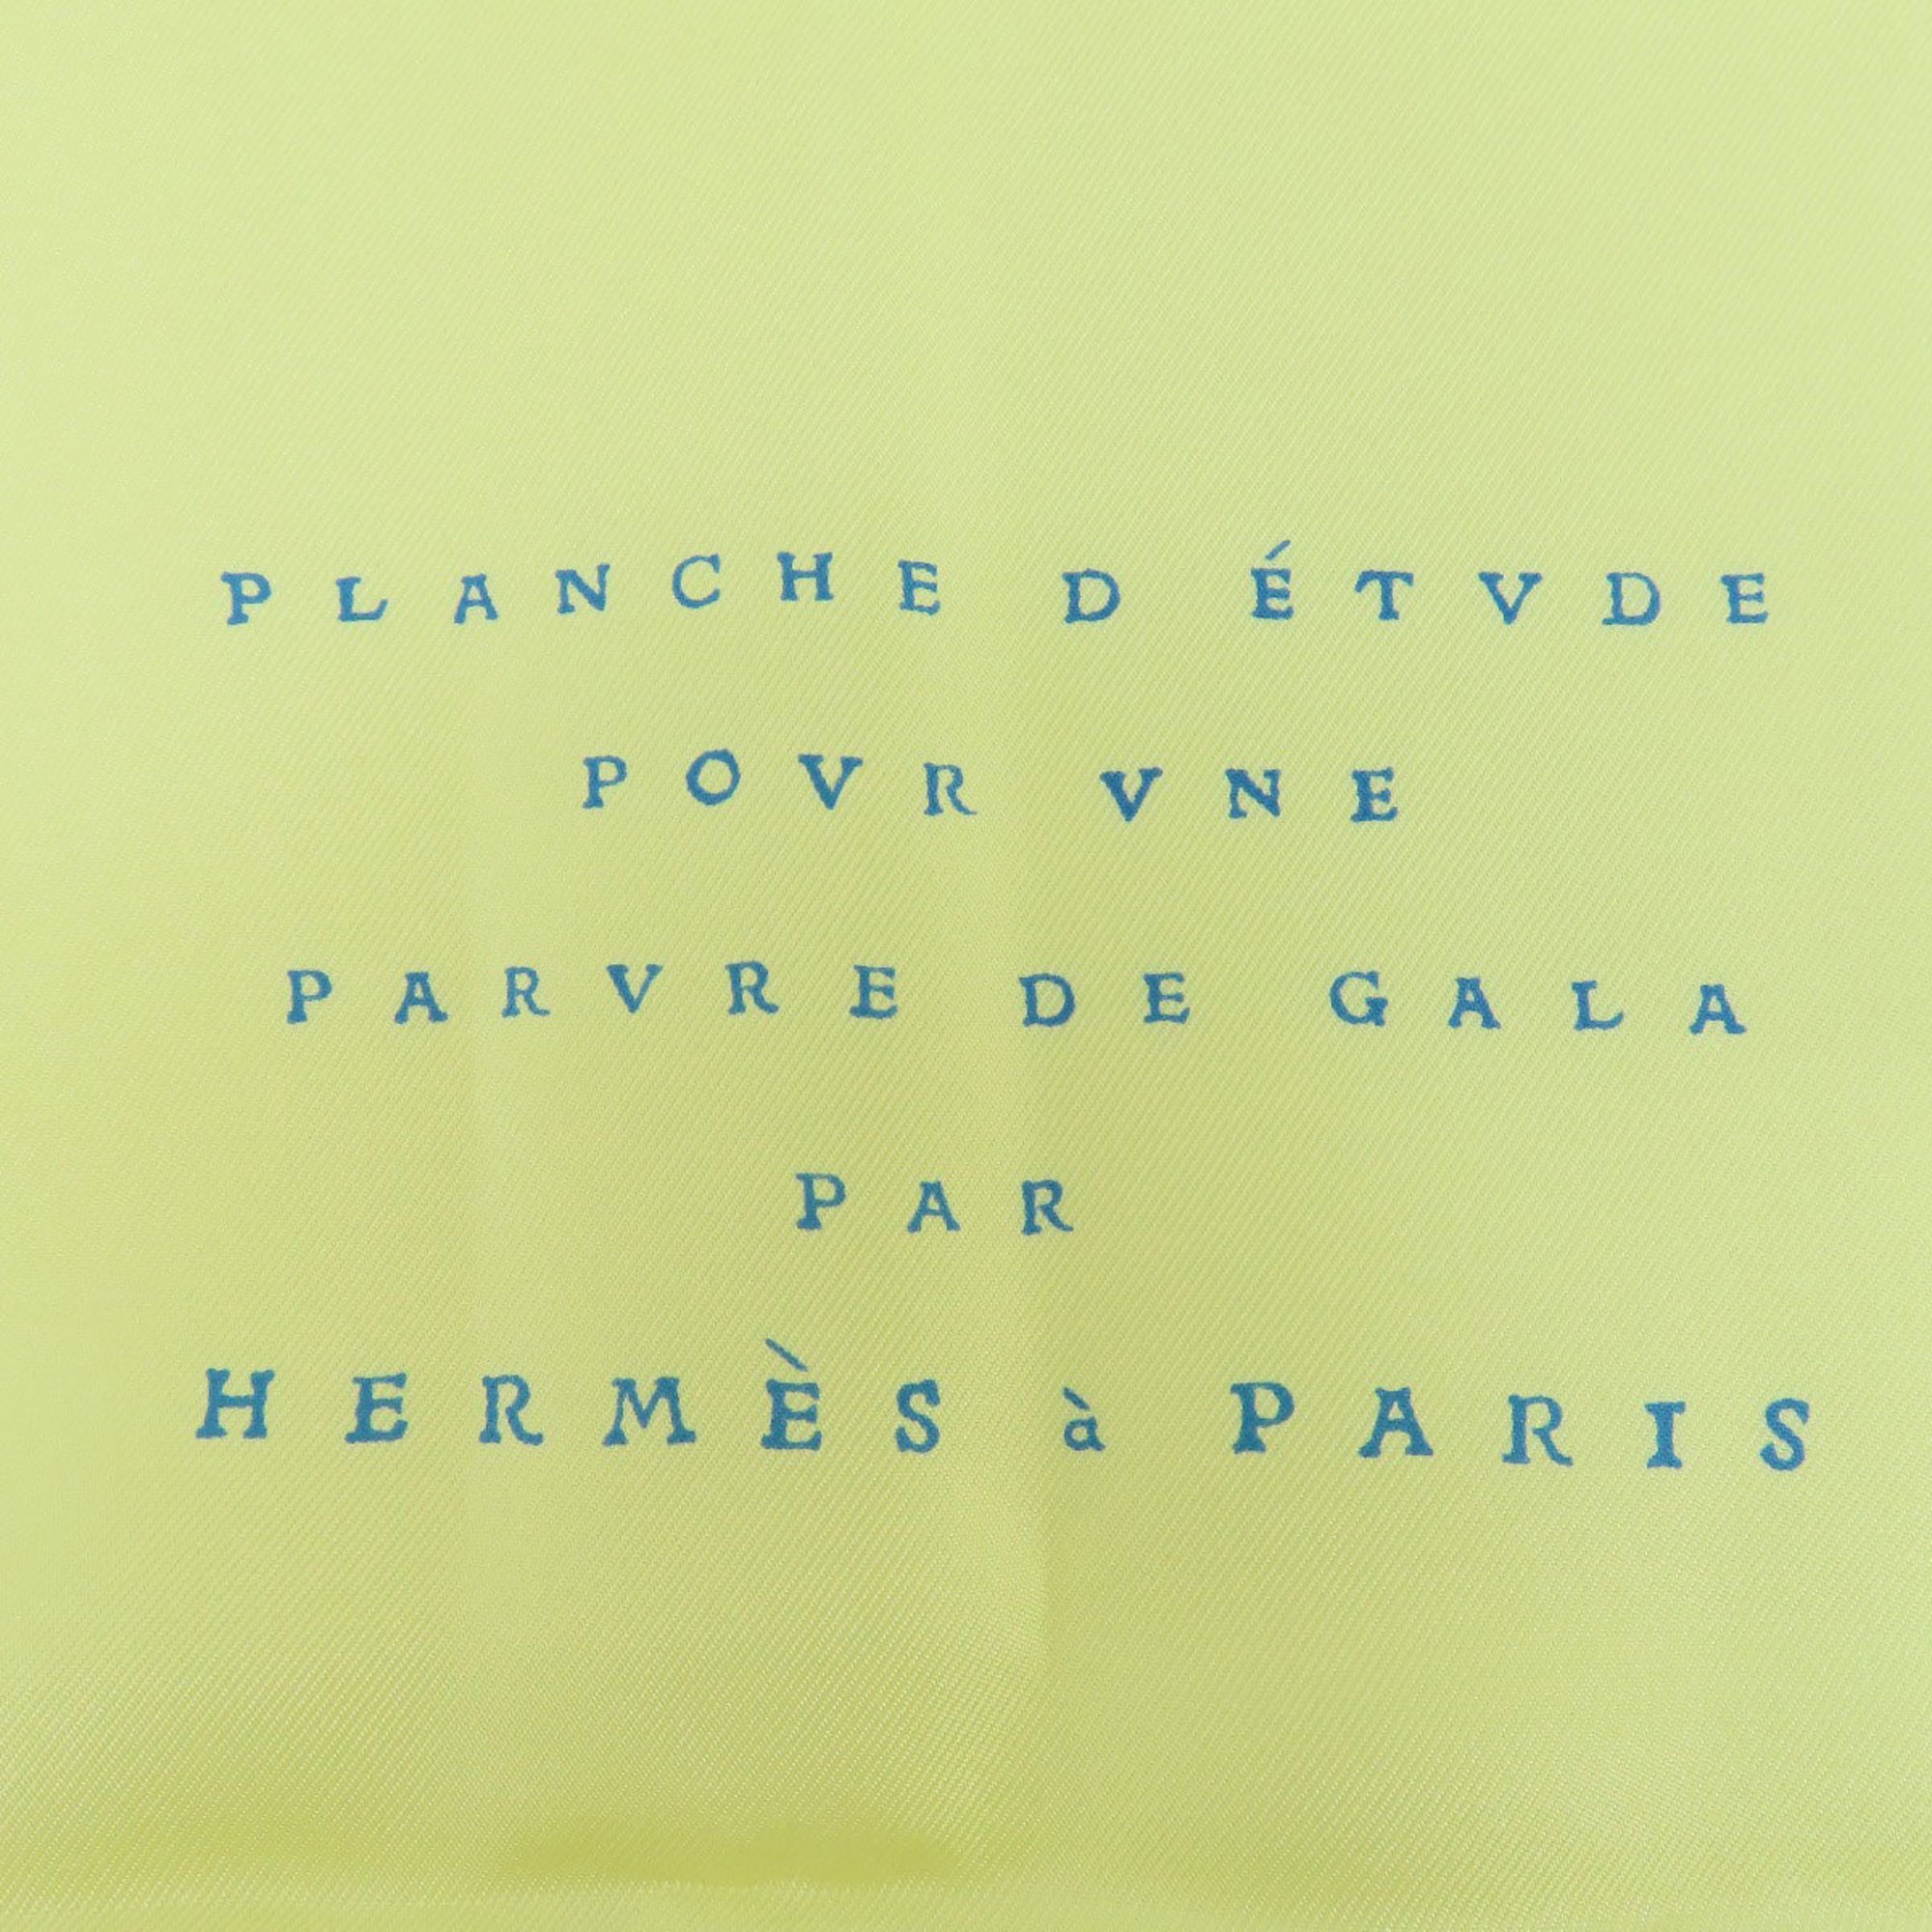 Hermes Carre 90 Tassel Motif Scarf Silk Women's